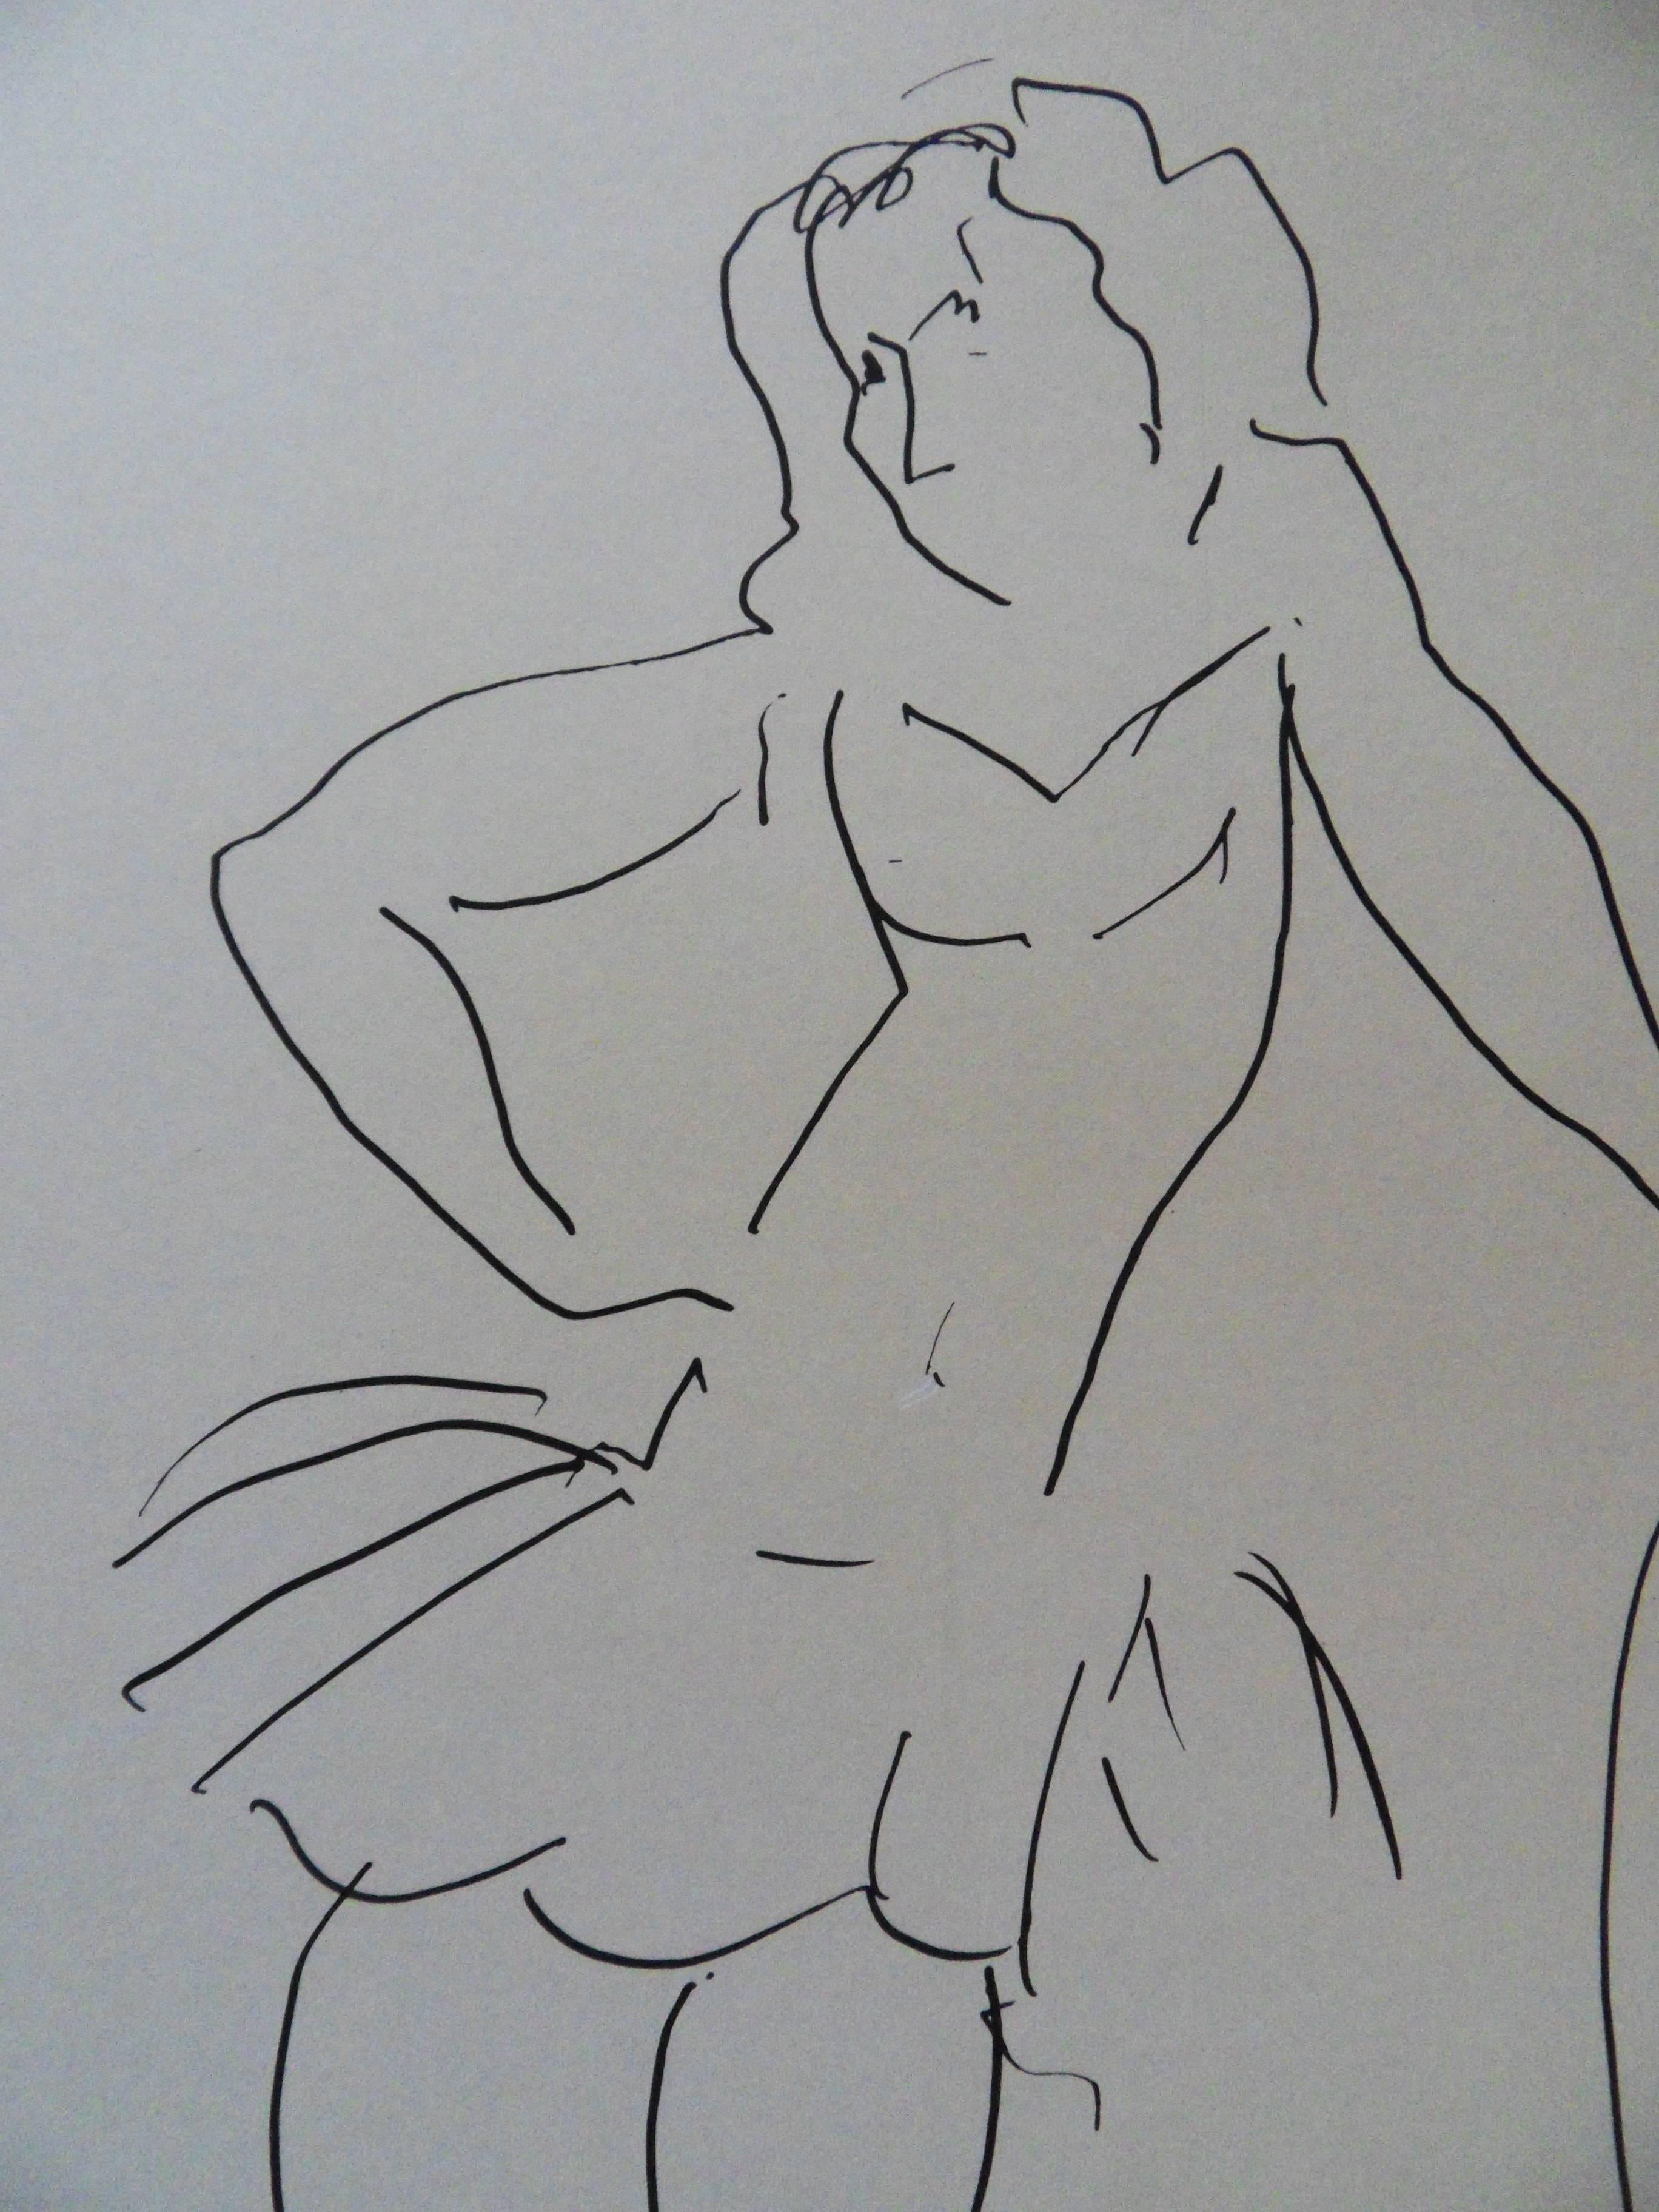 Henri MATISSE (nach)
Christiane - Tänzerin, 1980

Lithographie gedruckt in den Studios MOURLOT
Gedruckte Unterschrift auf der Platte
75 x 50 cm (29 x 20